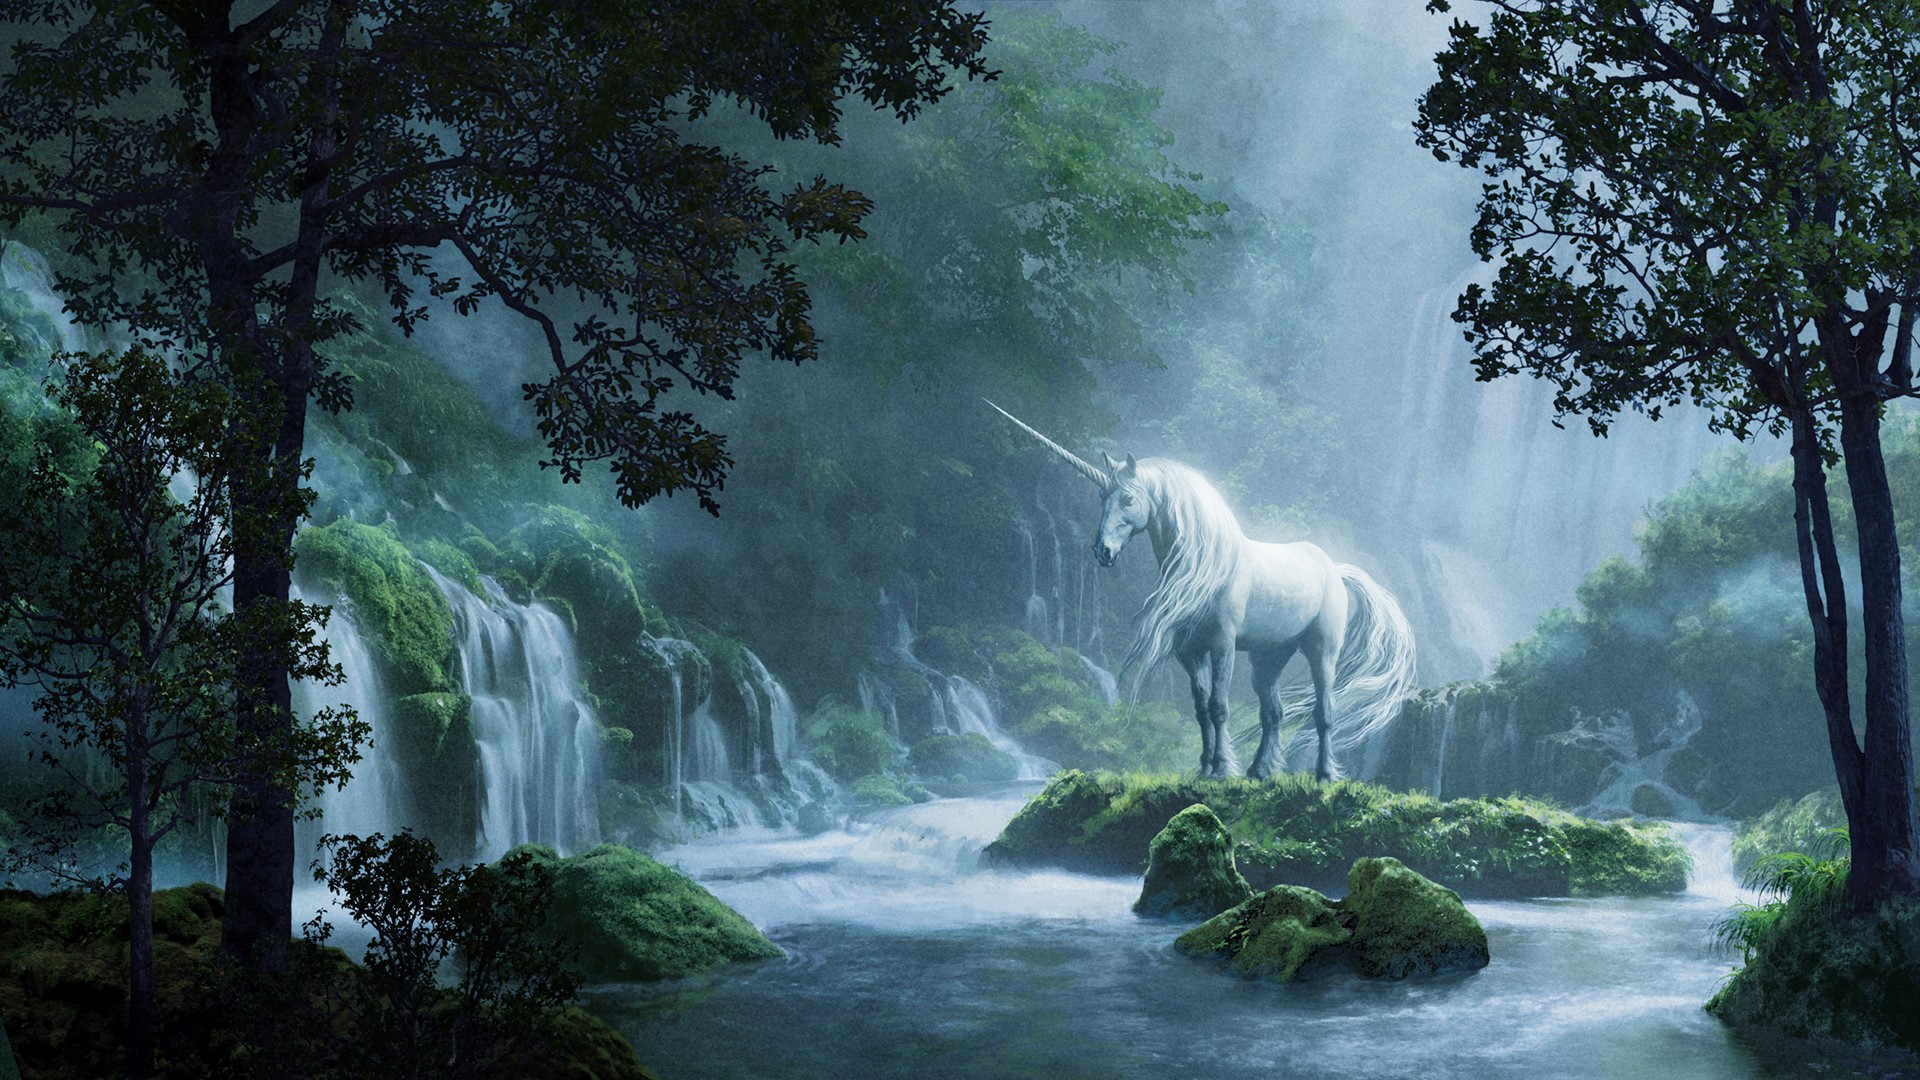 Enhörning som står i en skog vi ett vattenfall. Texten "Enhörningar, En familjeutställning" visas i slutet av videon tillsammans med en regnbåge.